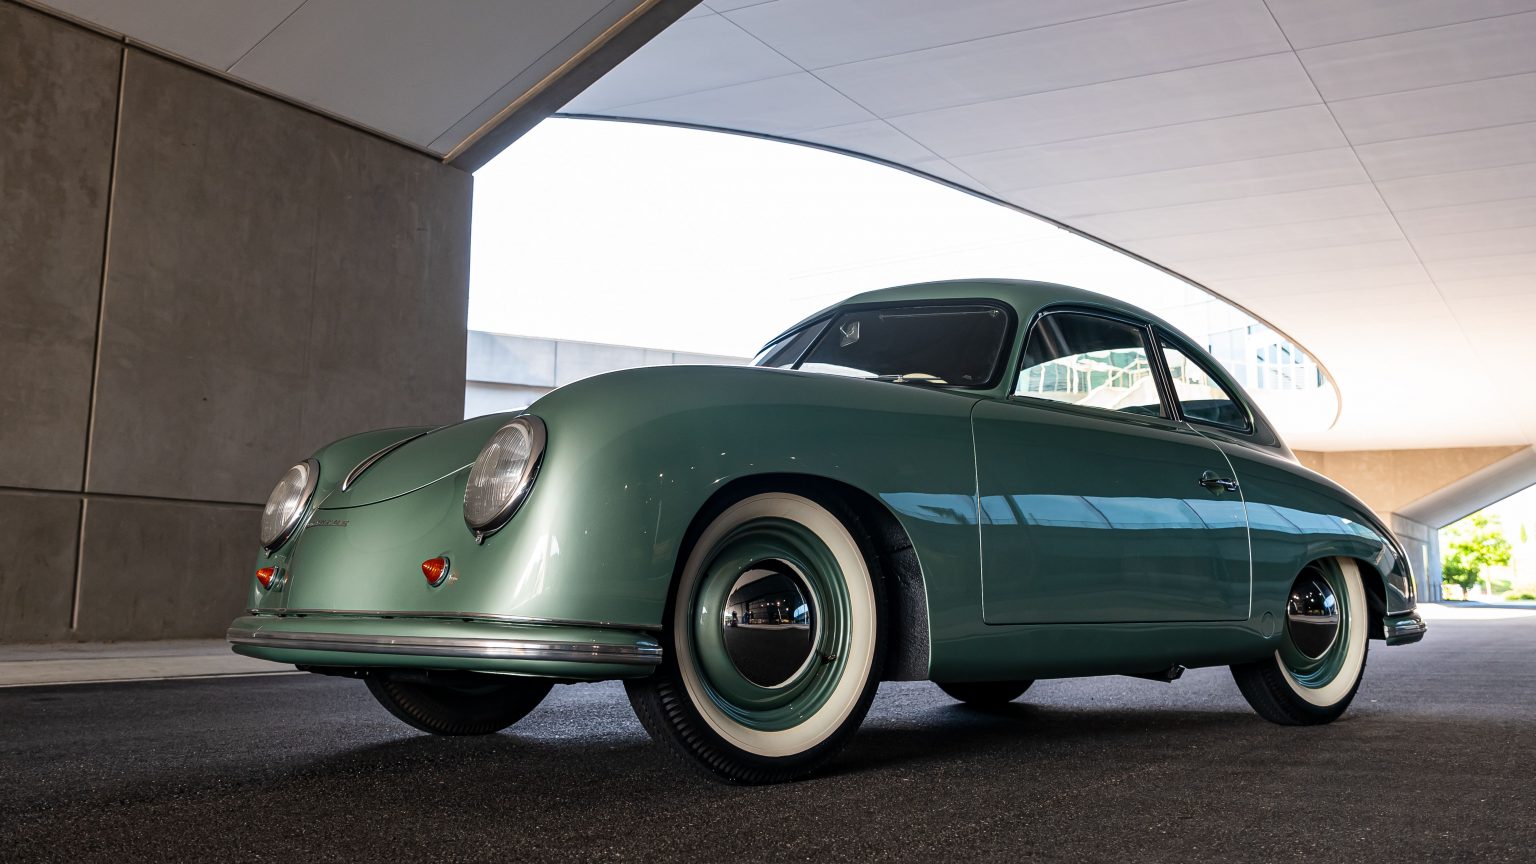 1950-Porsche-356-1.1 - 2 - Porsche 70 Years North America